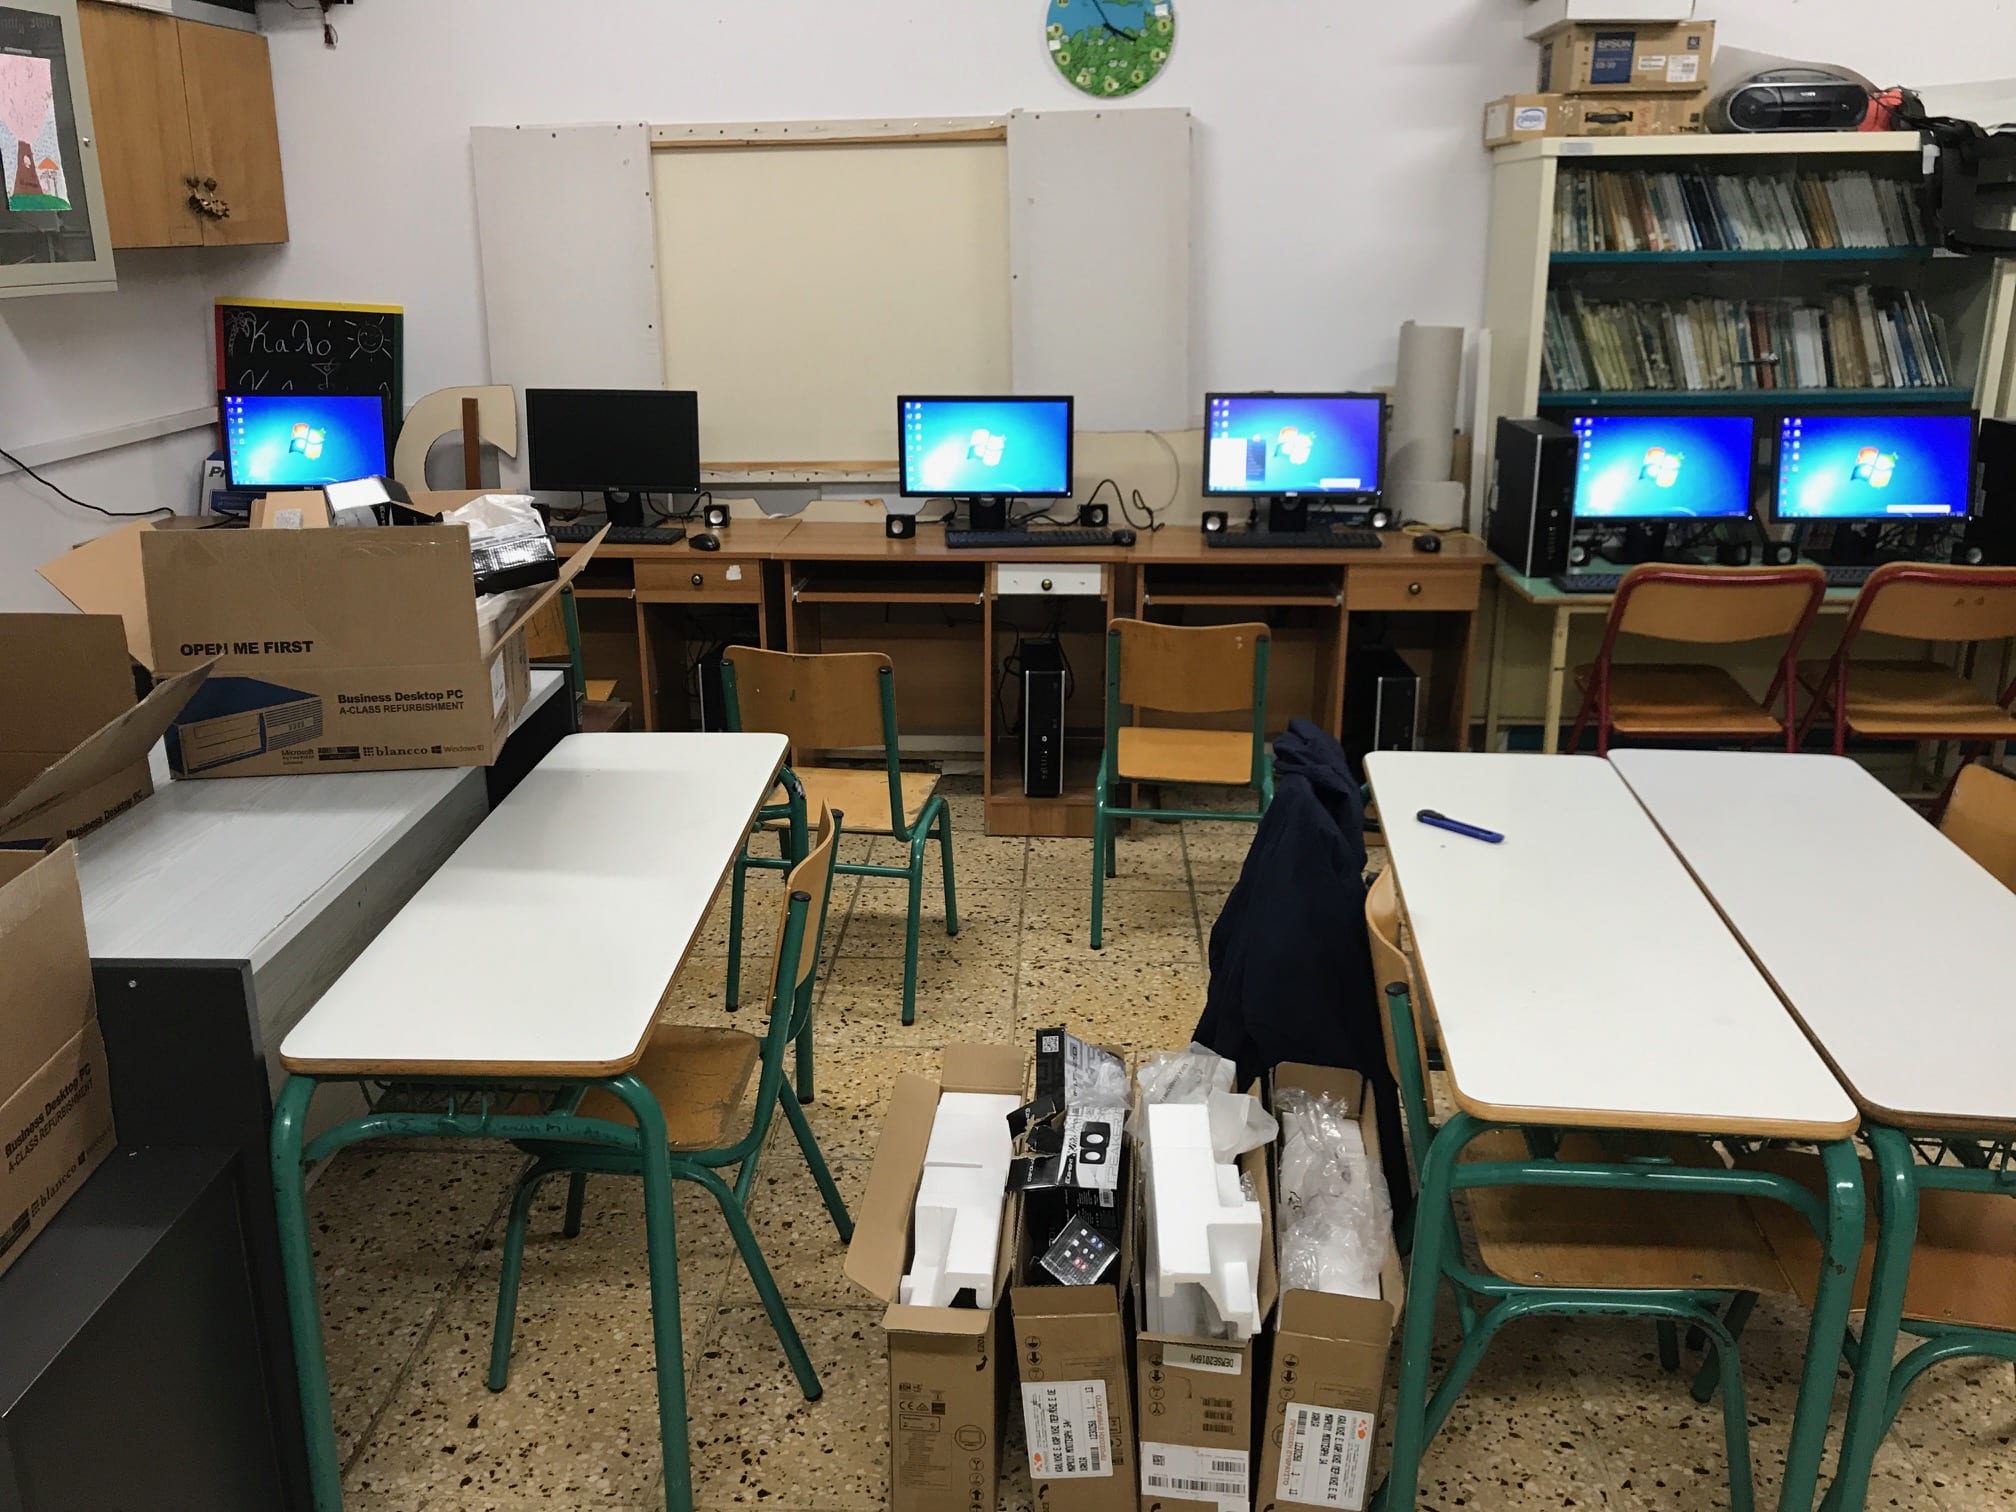 Η Οικογένεια Βαρδινογιάννη προσέφερε υπολογιστές σε σχολεία στα Σφακιά . Σε μία σημαντική προσφορά προς τους μαθητές των σχολείων του Δήμου Σφακίων ...